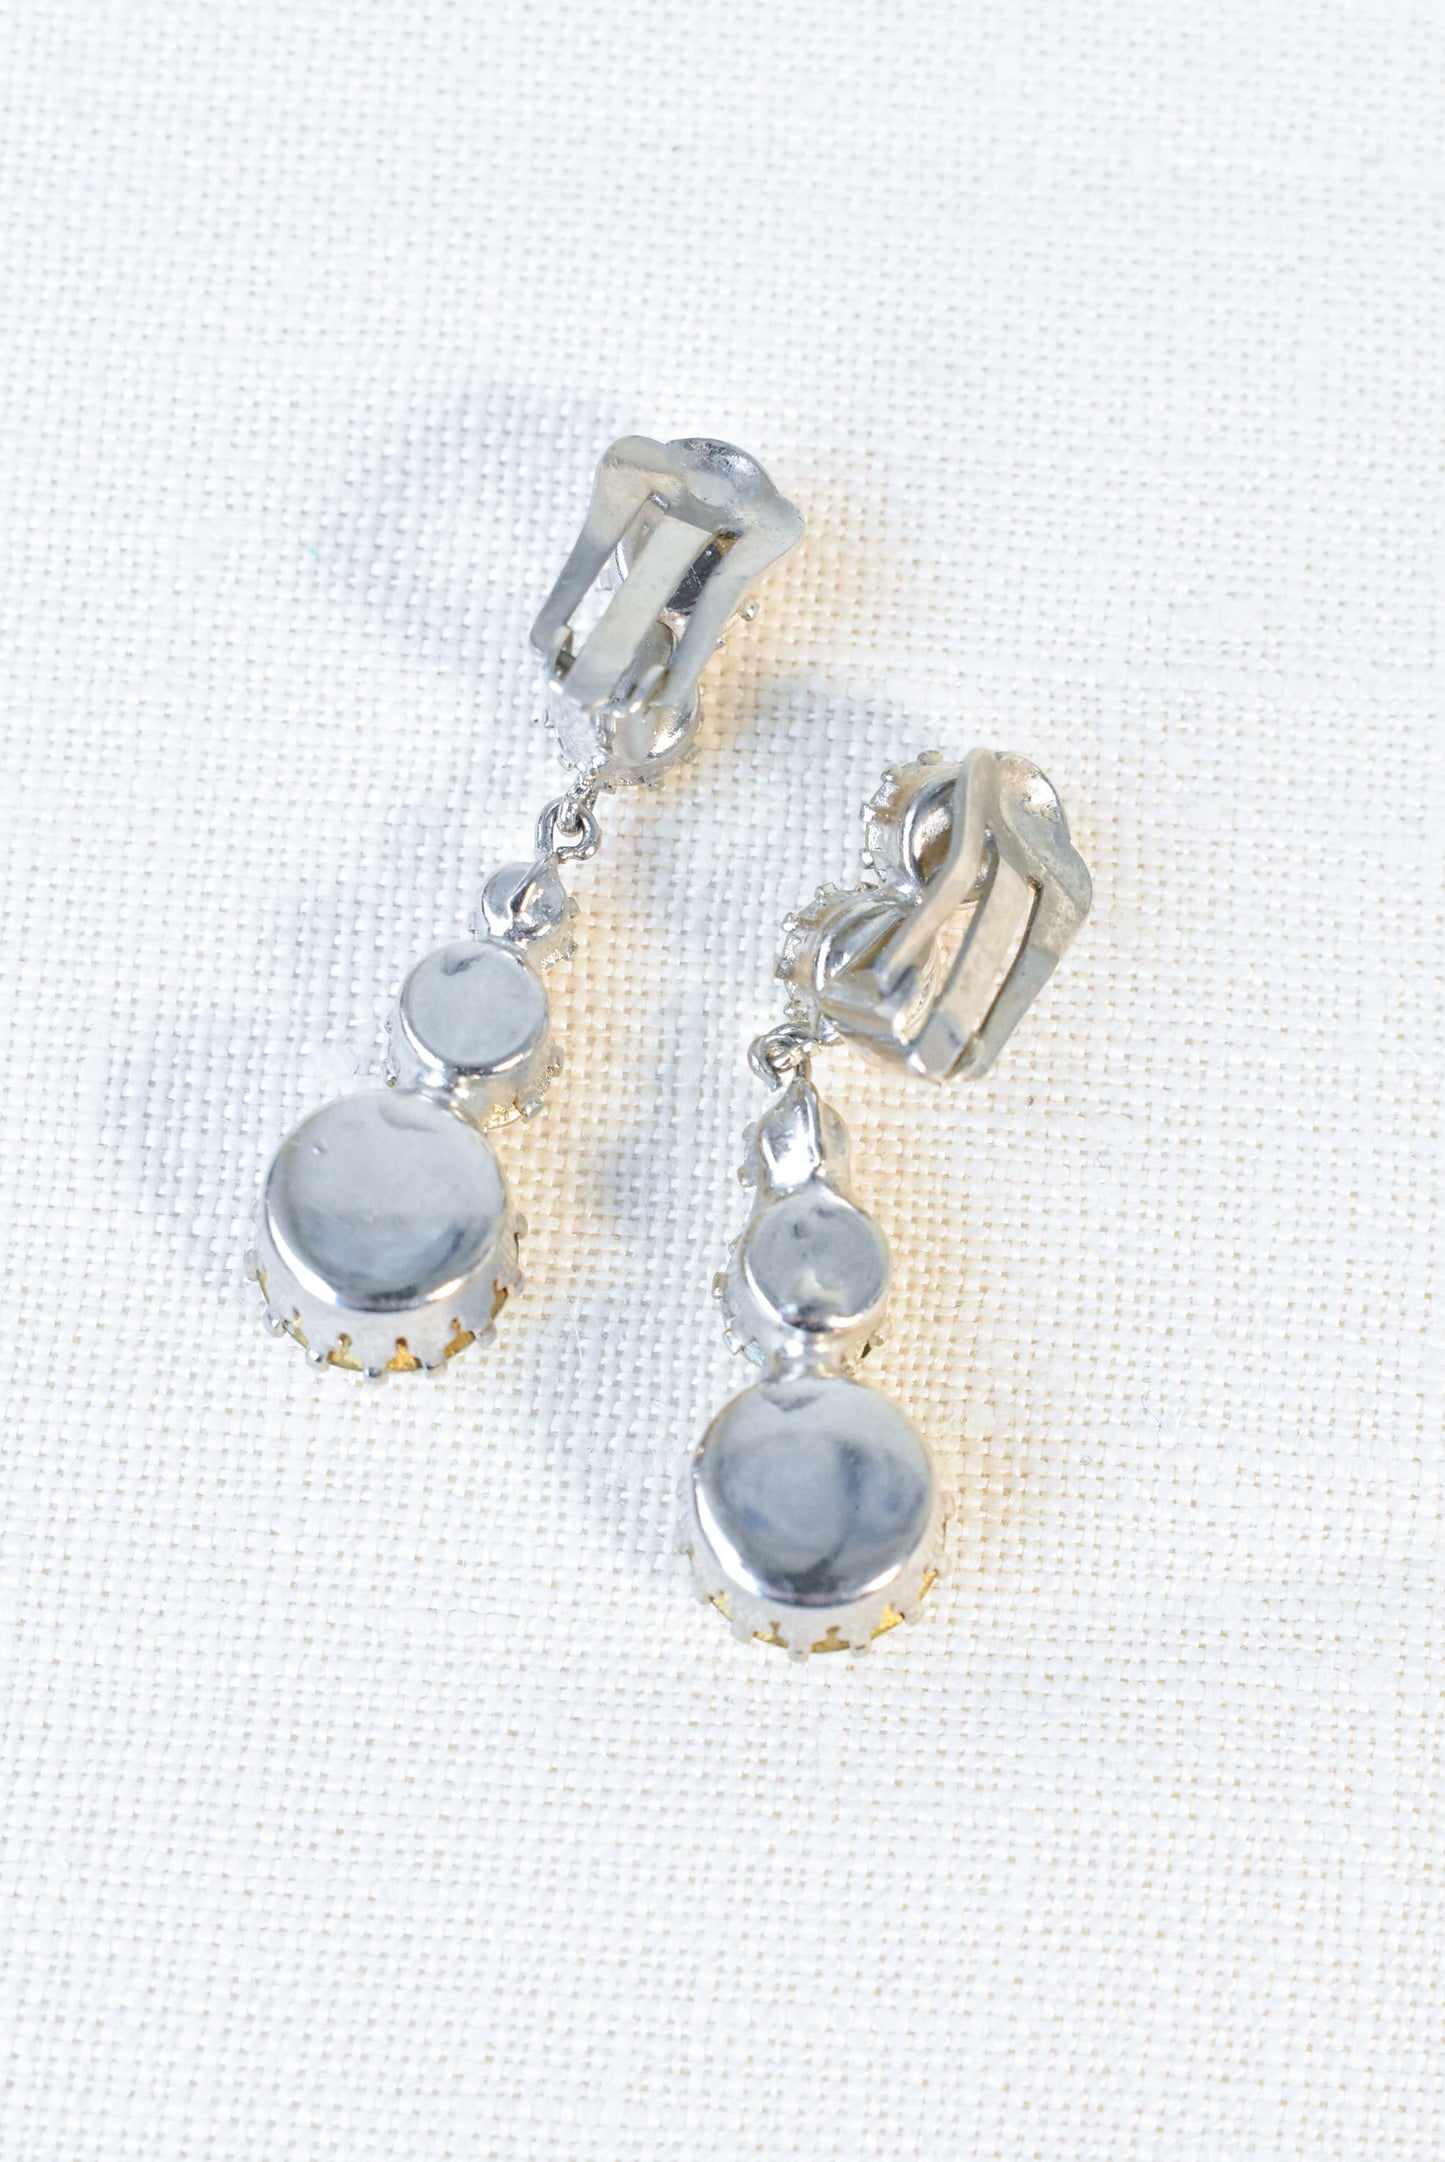 Five rhinestone clip-on earrings